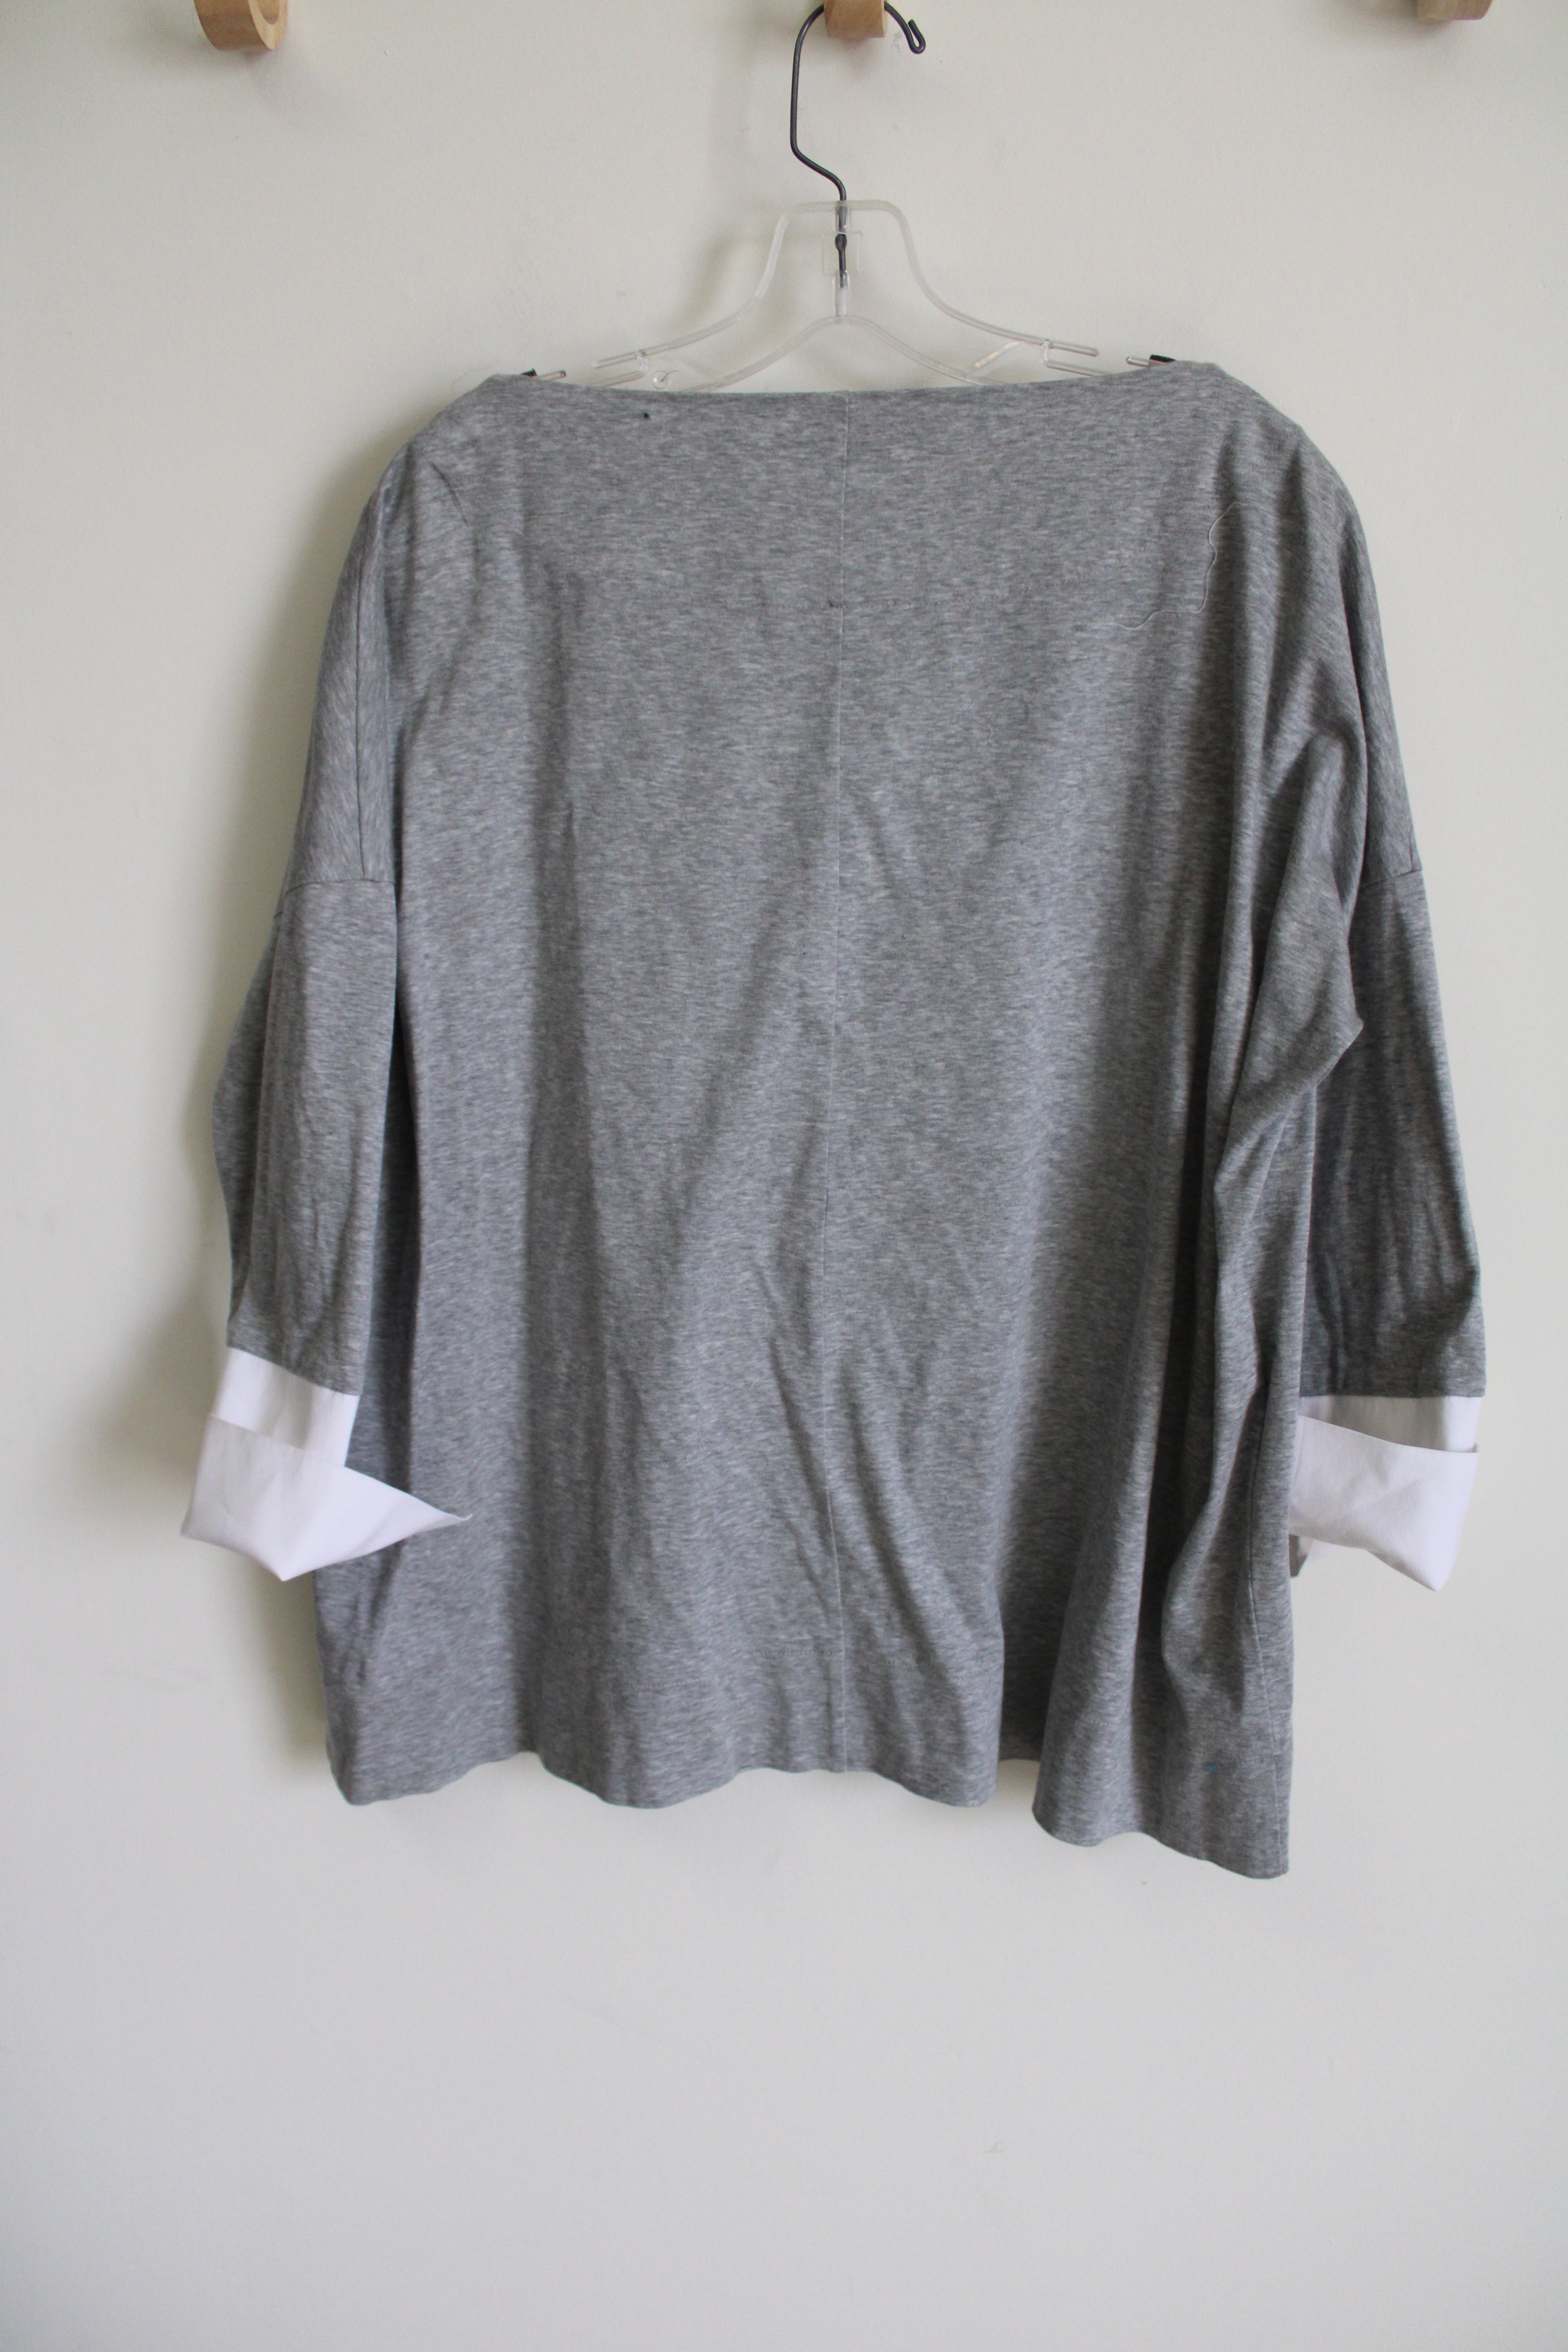 Lafayette 148 Gray Layered Shirt | M